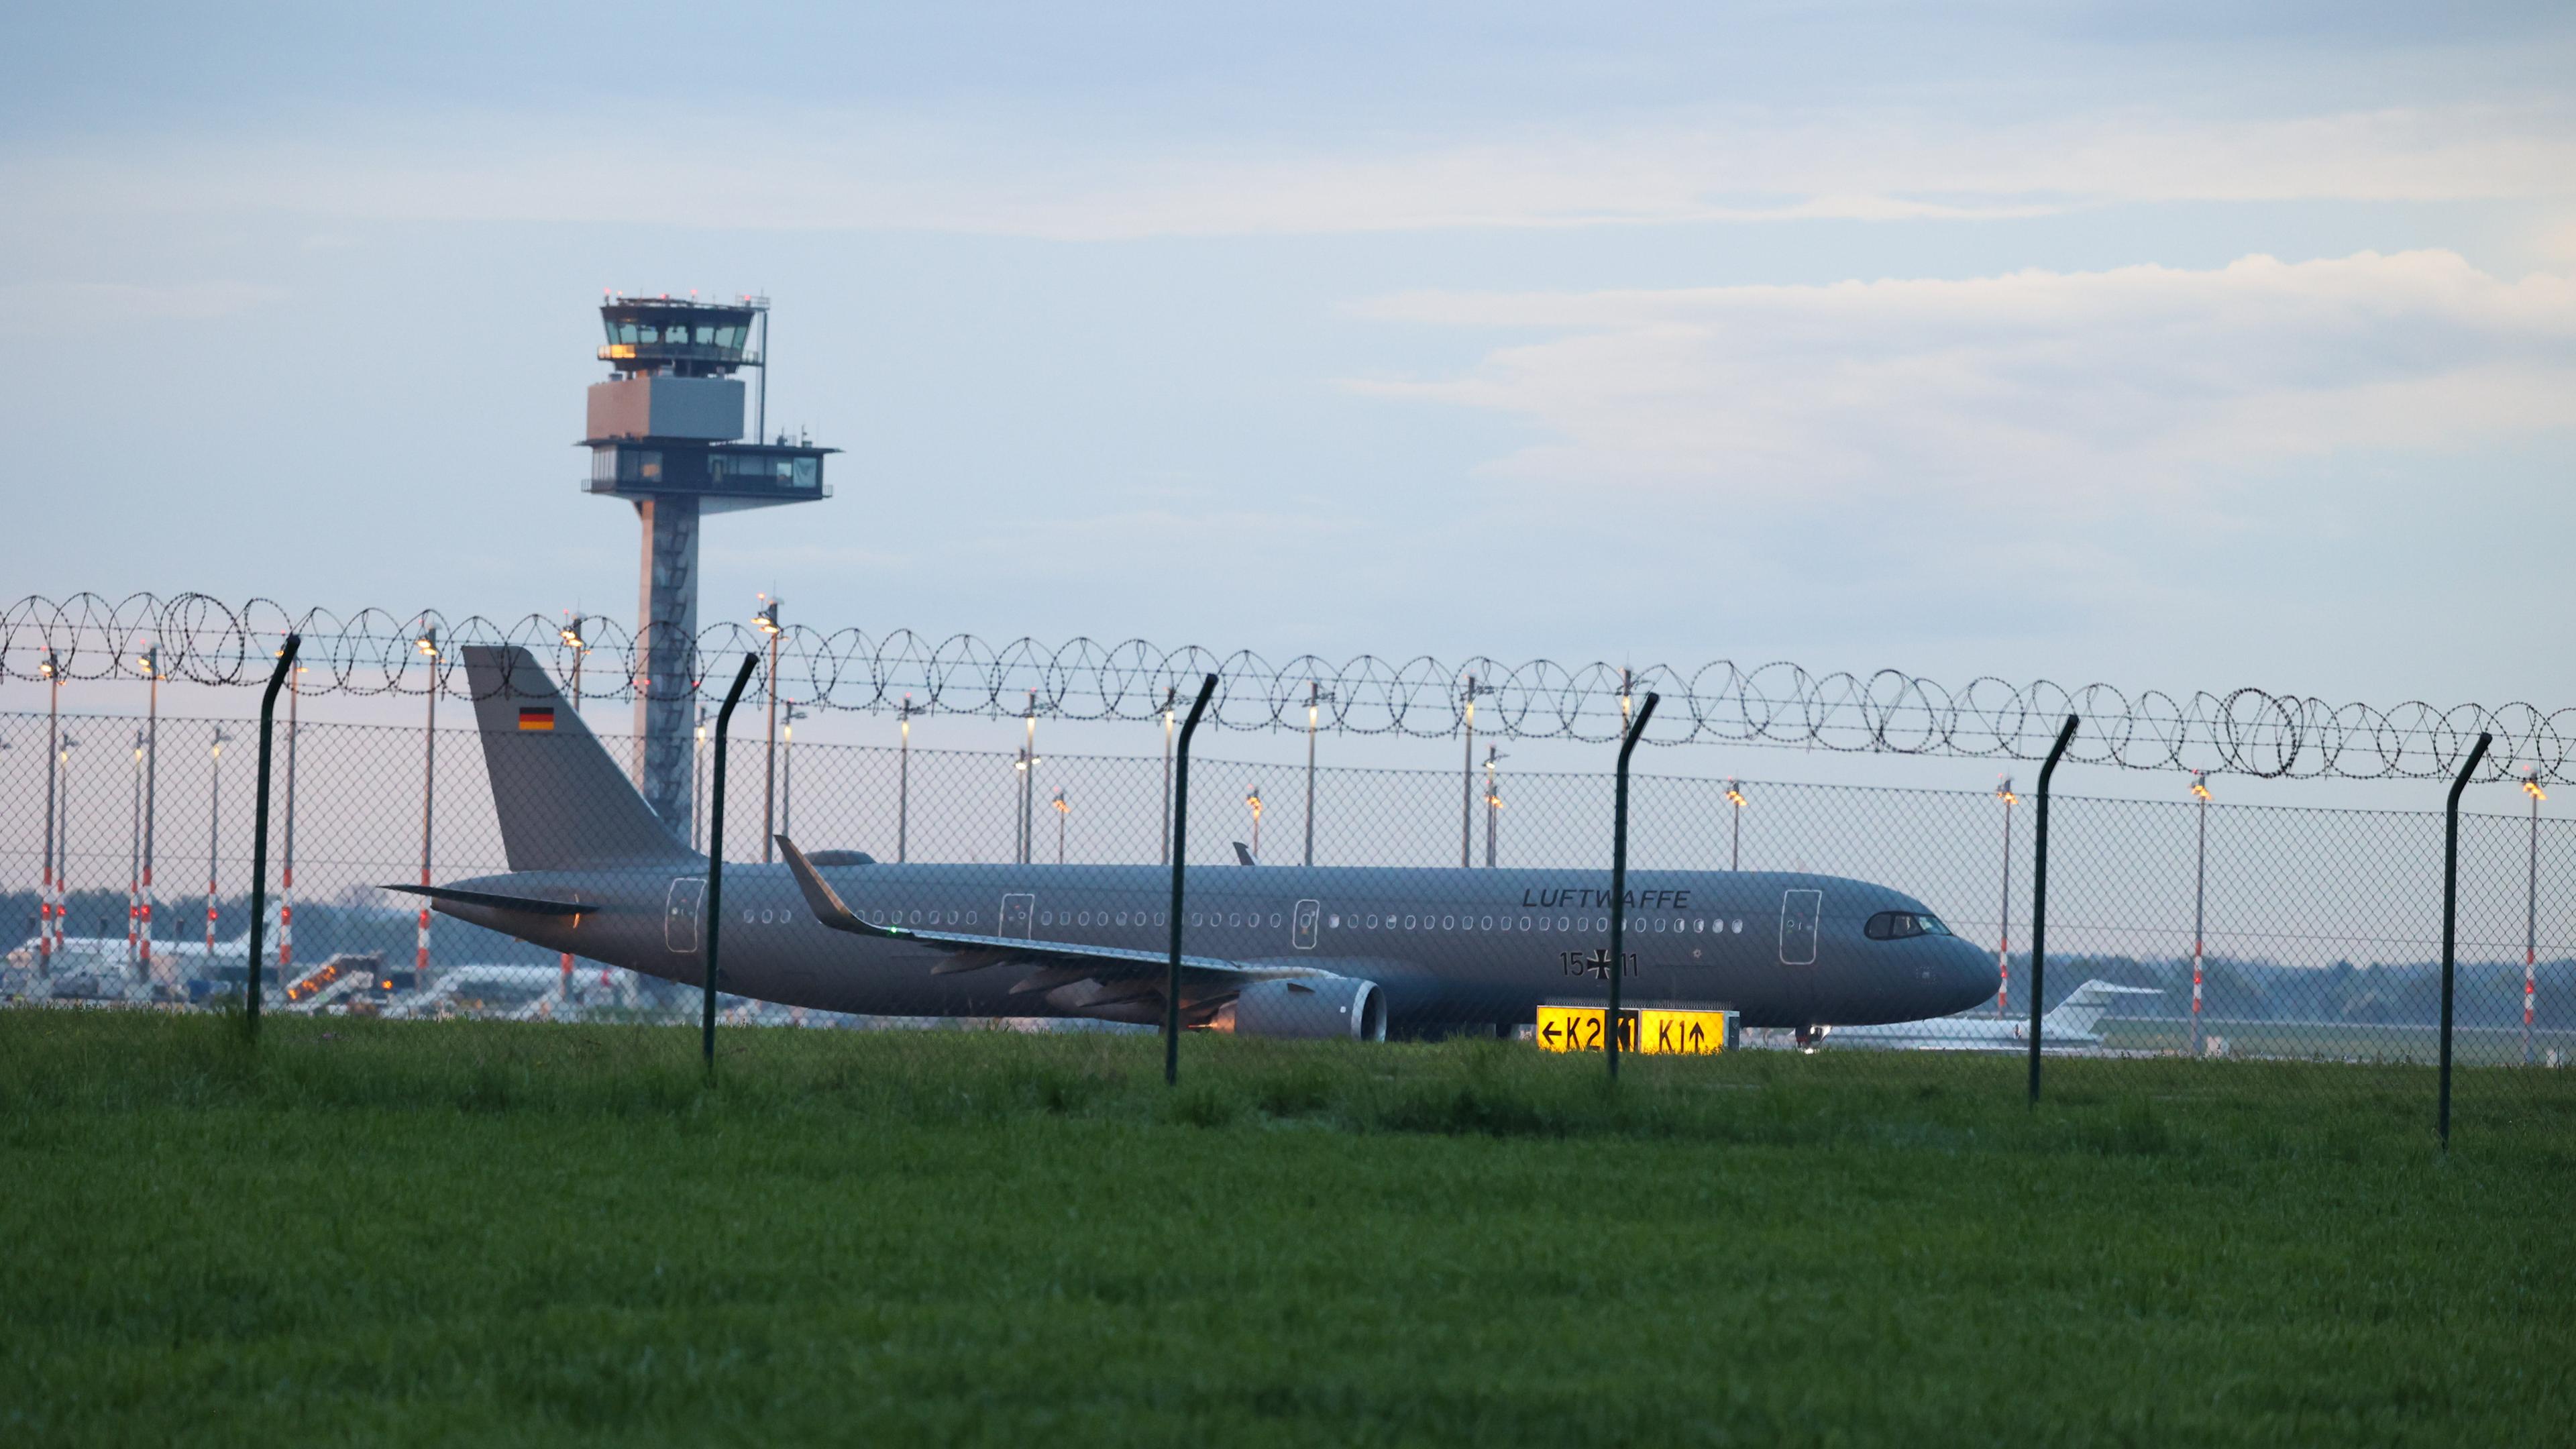  Berlin: Ein Airbus der Luftwaffe landet mit aus dem Sudan evakuierten Bundesbürgern auf dem Flughafen BER.